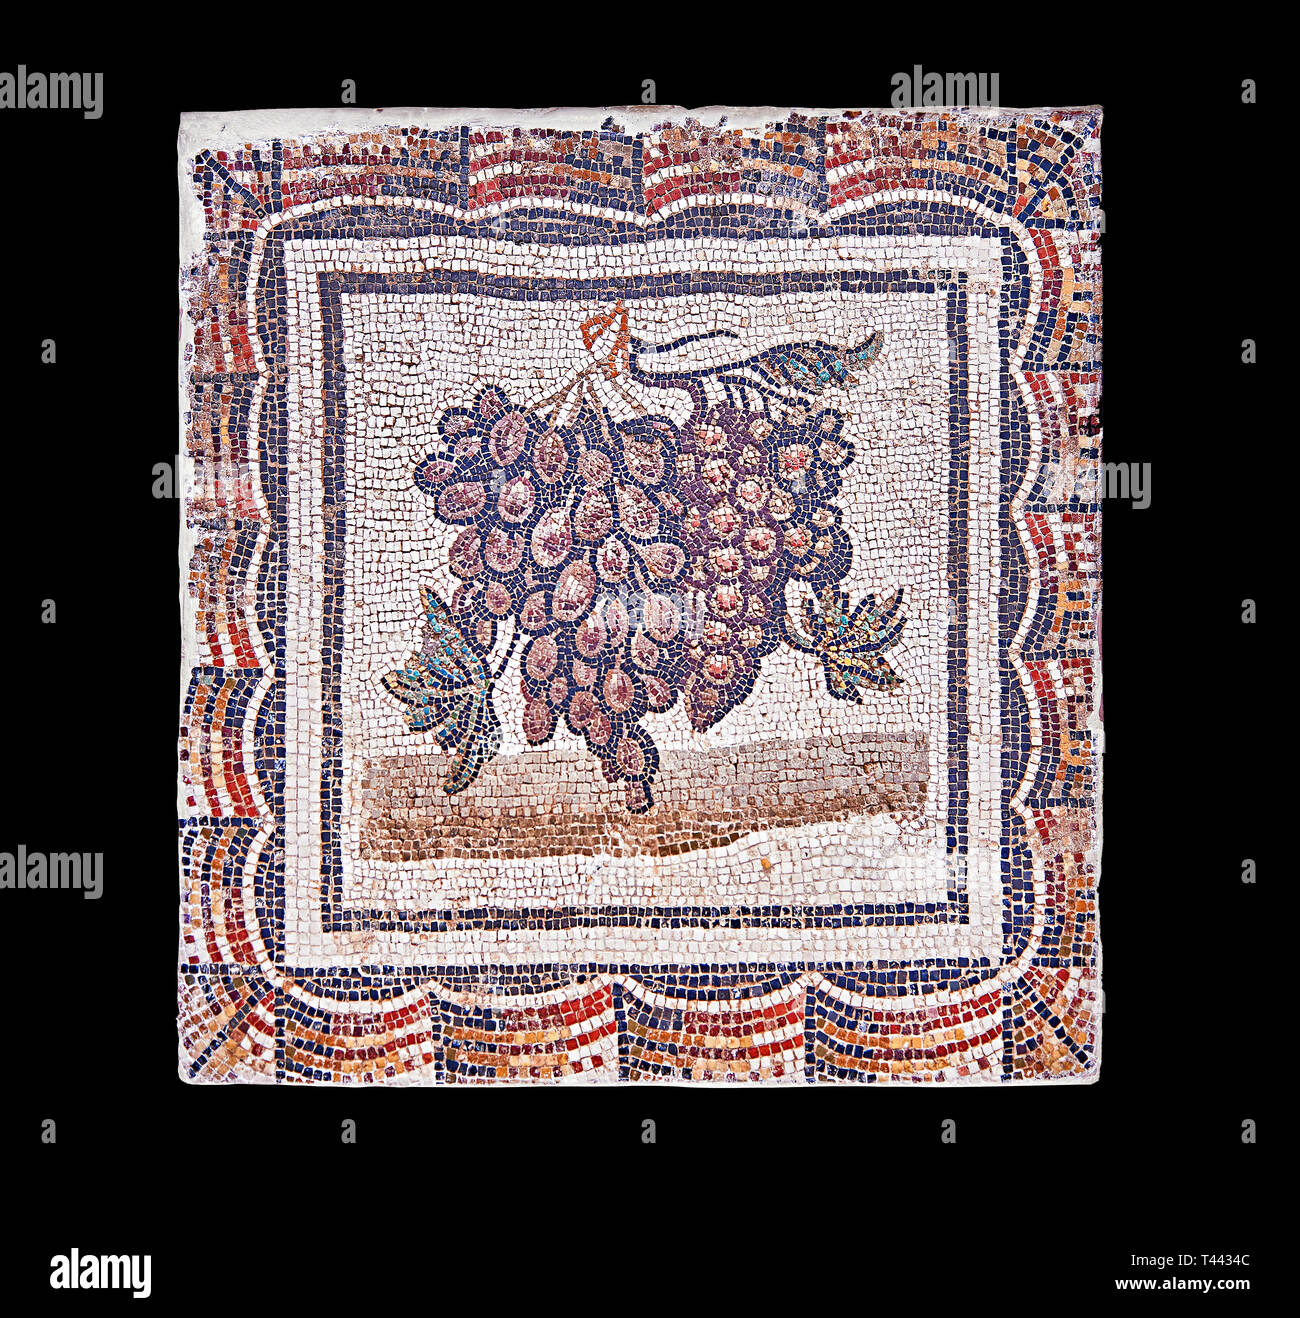 3e siècle mosaïque romaine de bord de raisins noirs et blancs. De Thysdrus (El Jem), Tunisie. Le Musée du Bardo, Tunis, Tunisie. Fond noir Banque D'Images